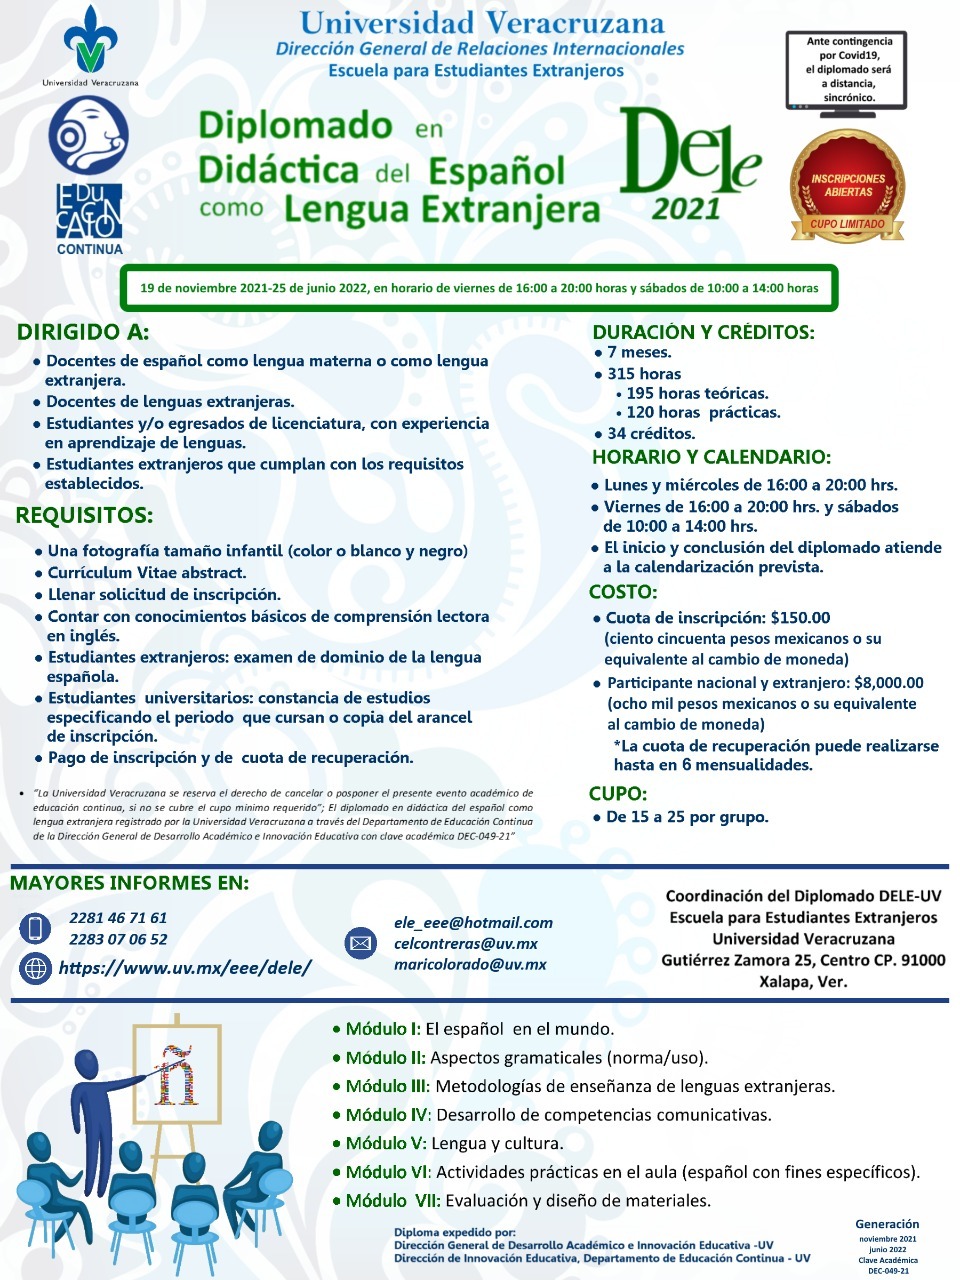 EEE - Diplomado en Didáctica del Español como Lengua Extranjera 2021 segunda